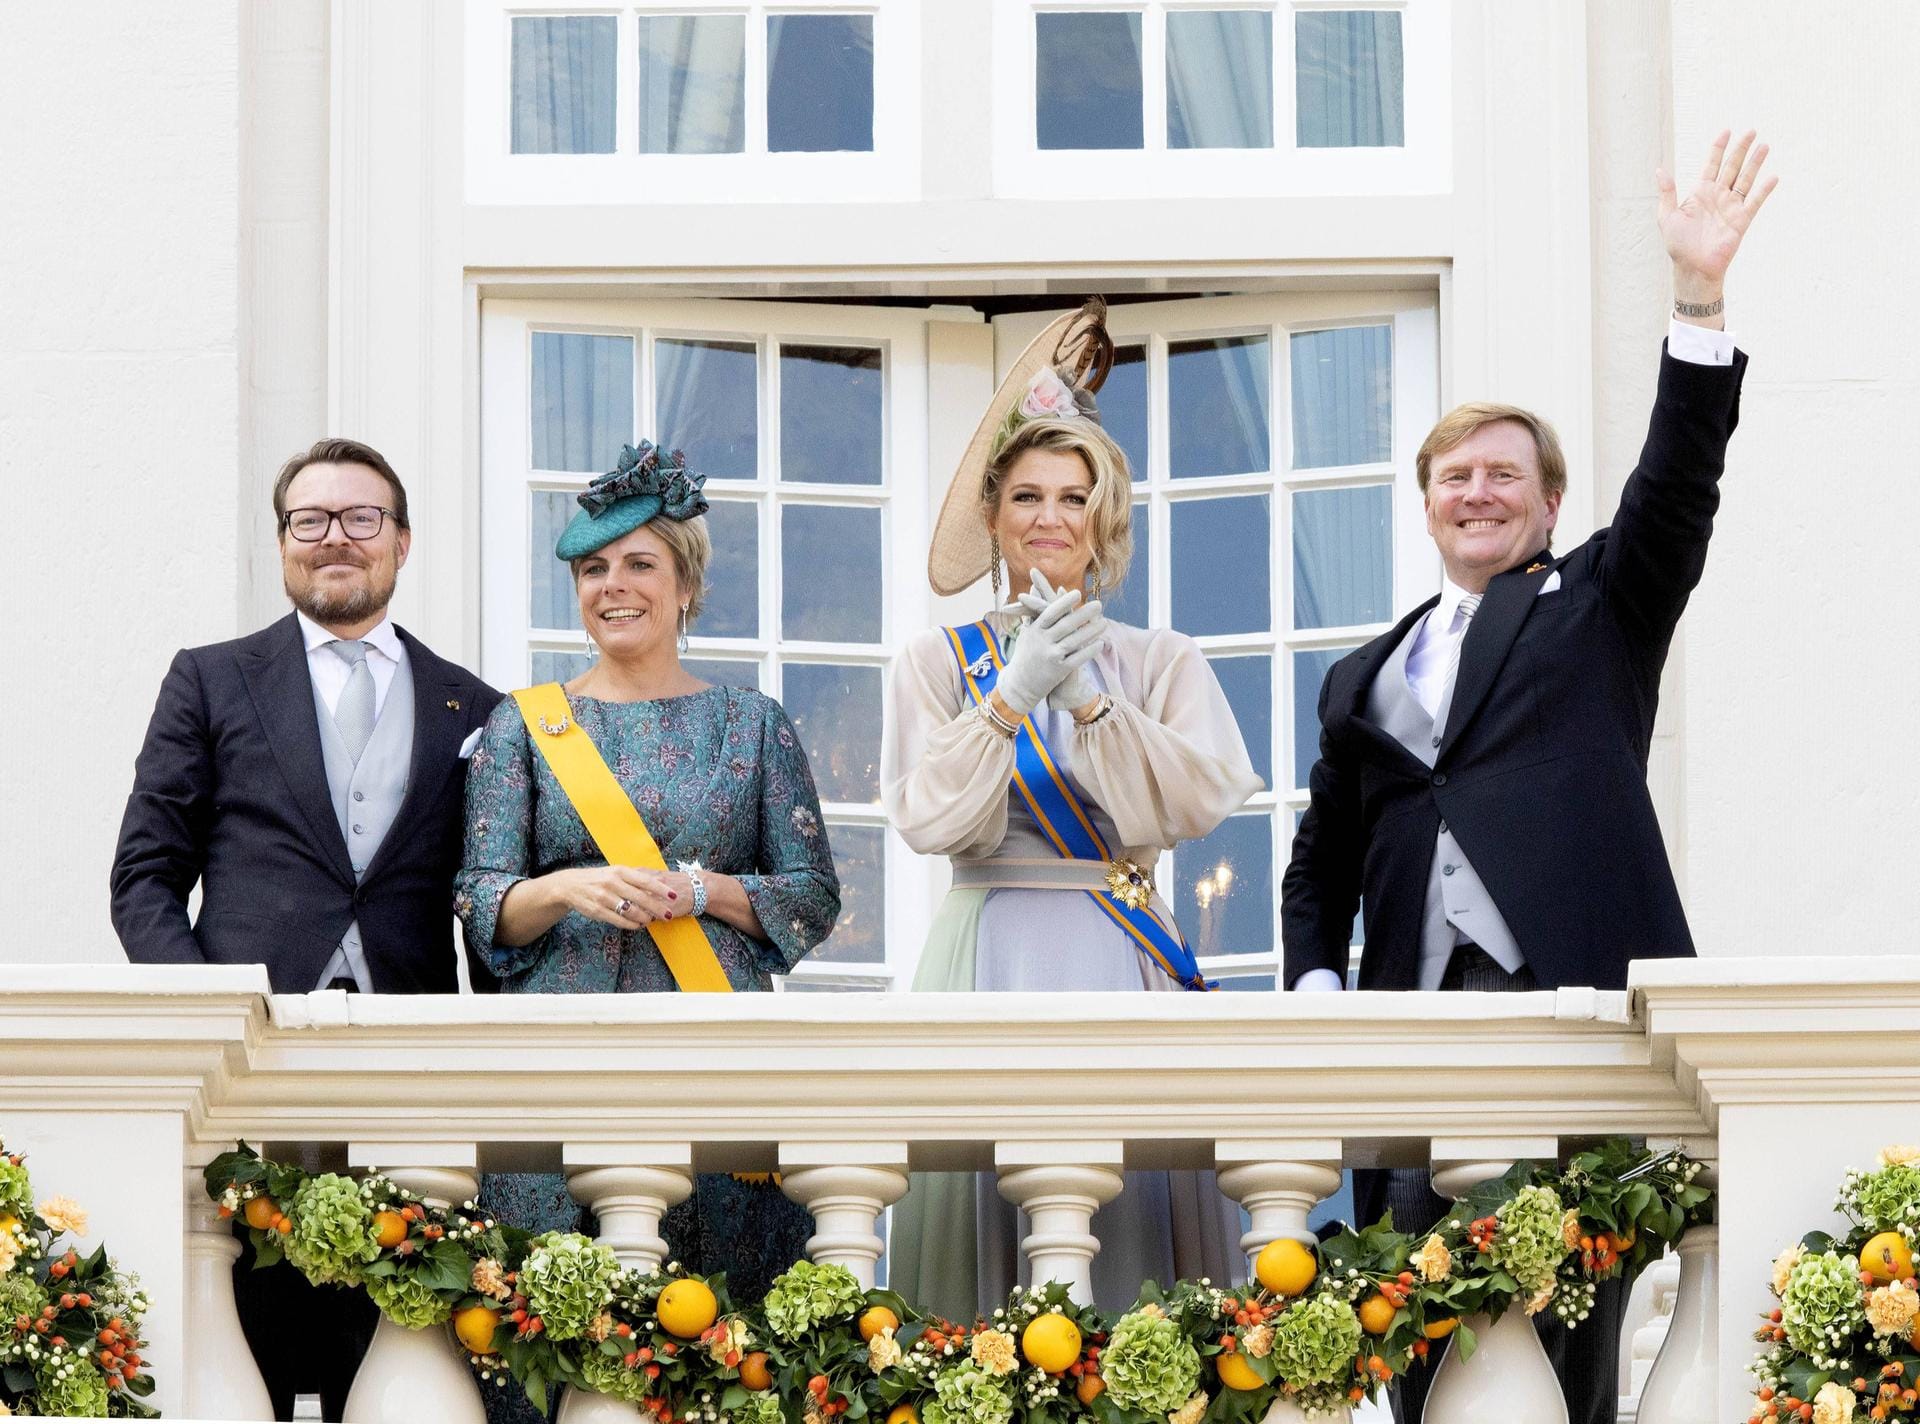 Glücklich versammelt: Prinz Constantijn, Prinzessin Laurentien, Königin Màxima und König Willem Alexander sind gerührt von dem Empfang, der ihnen geboten wurde.